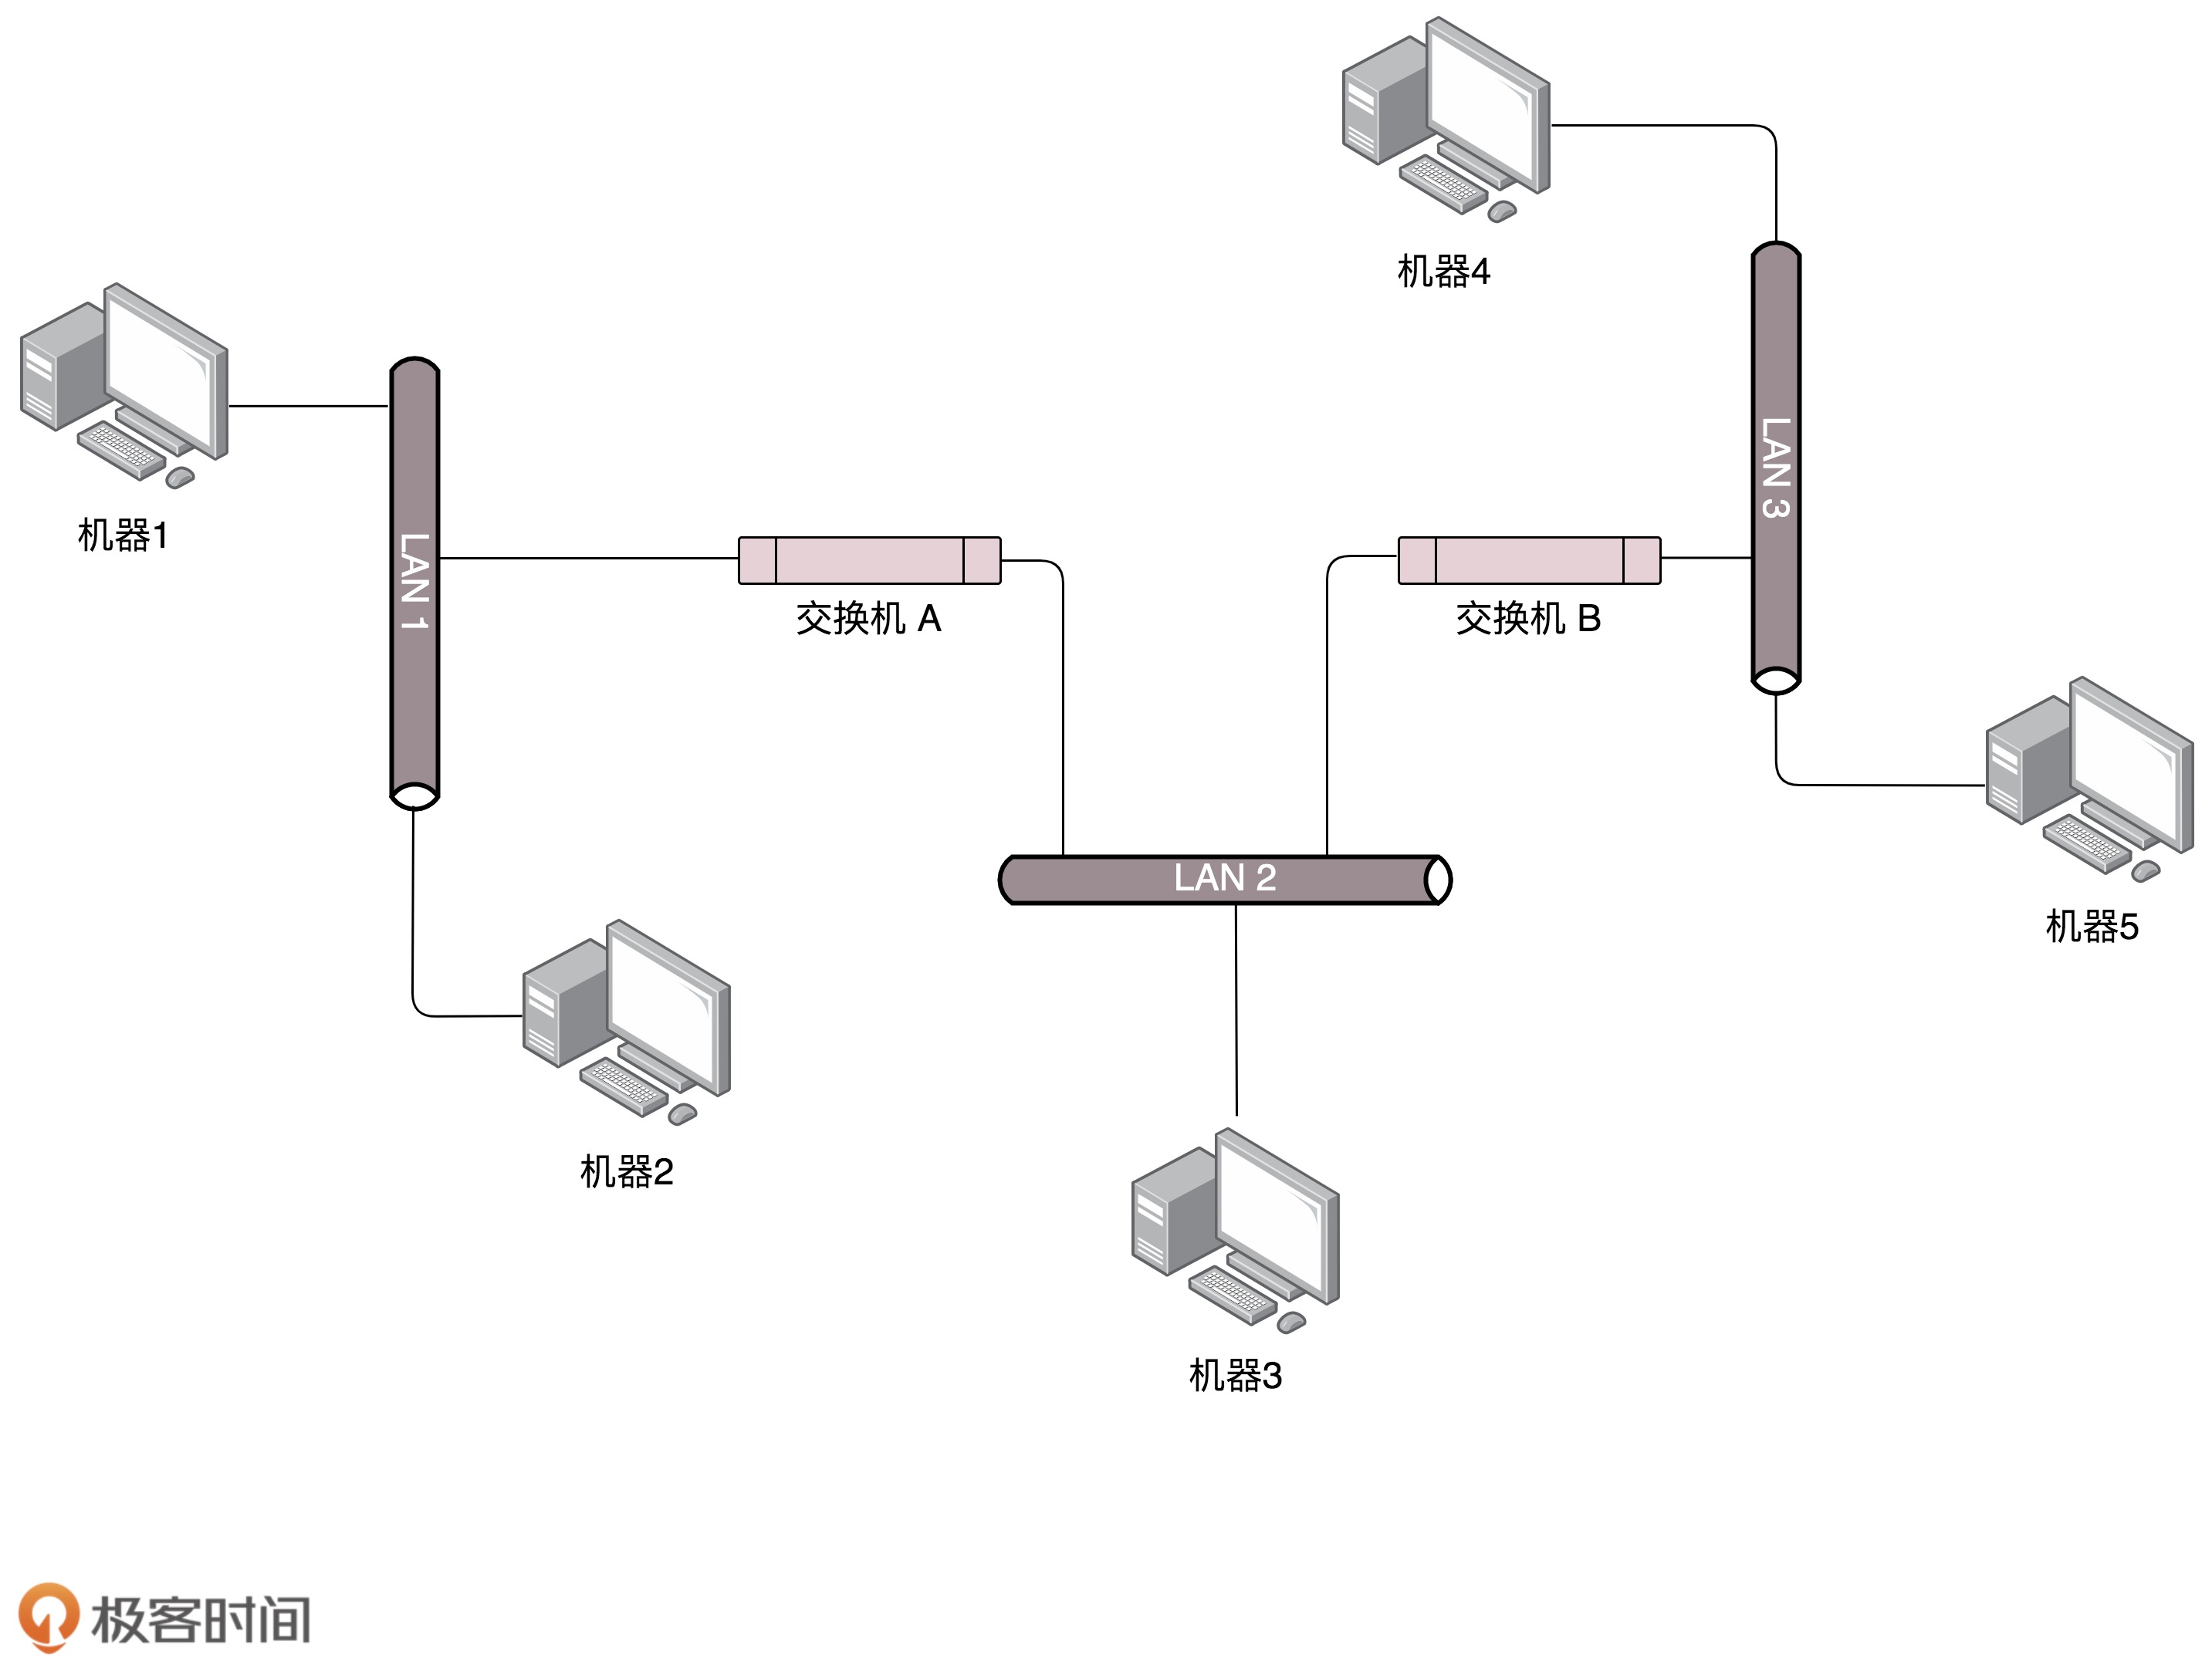 局域网网络拓扑结构图图片